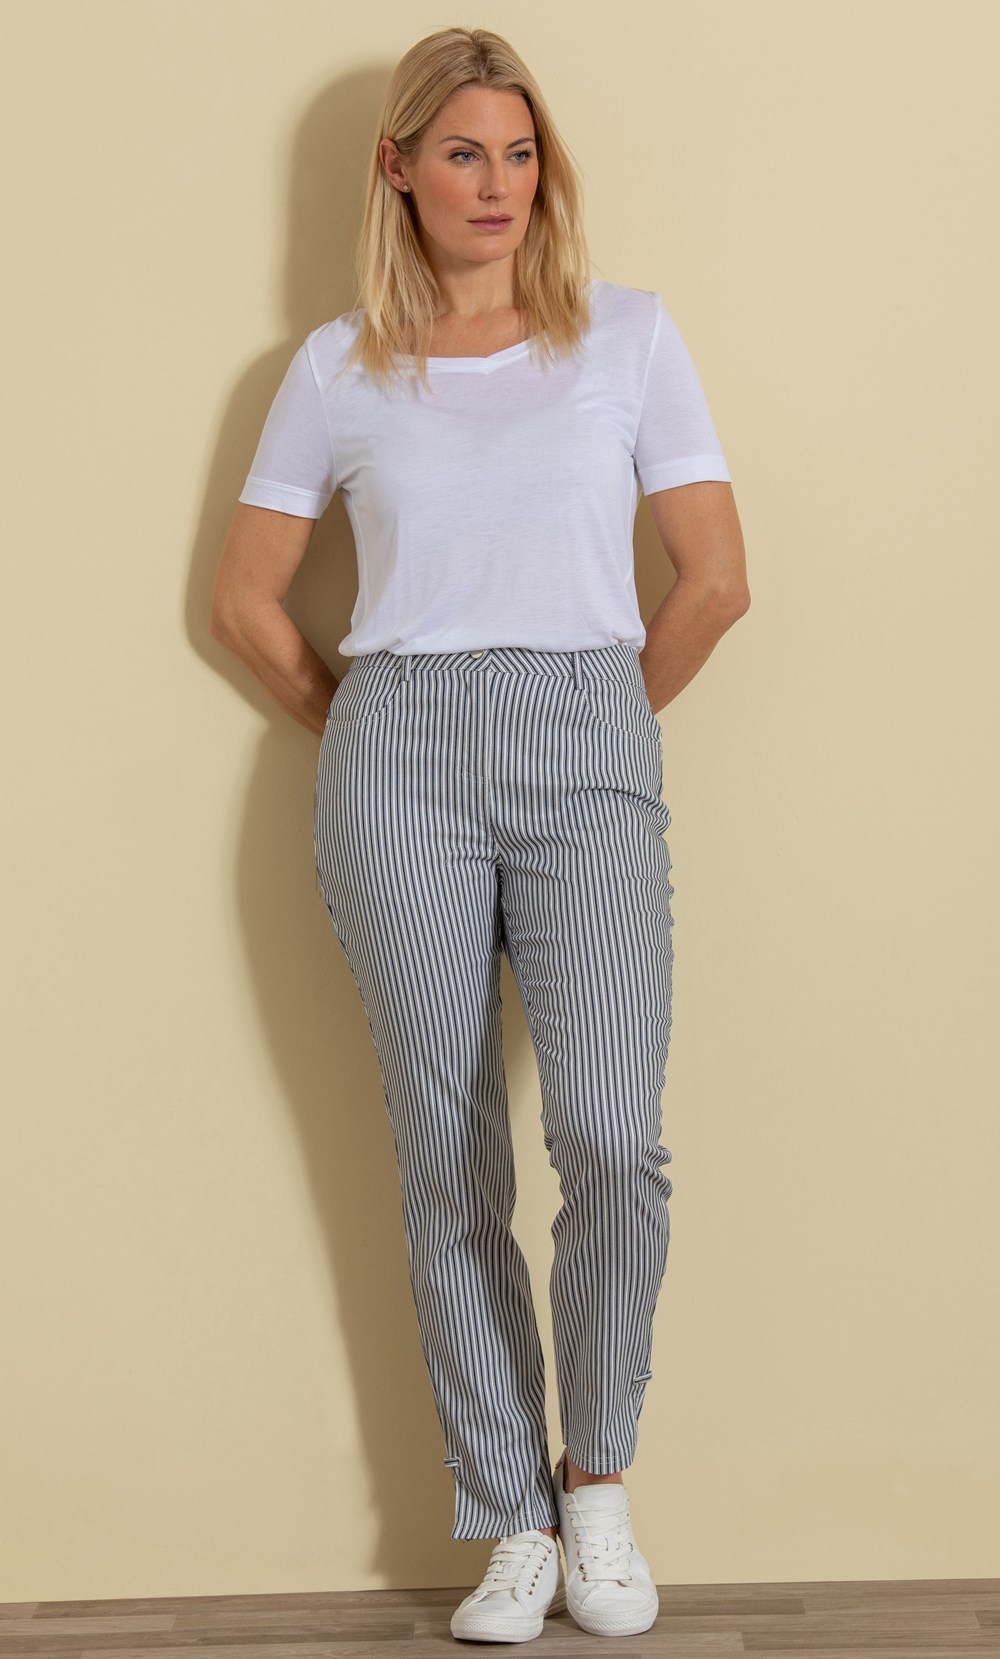 Brands - Klass Full Length Striped Trousers Navy/White Women’s